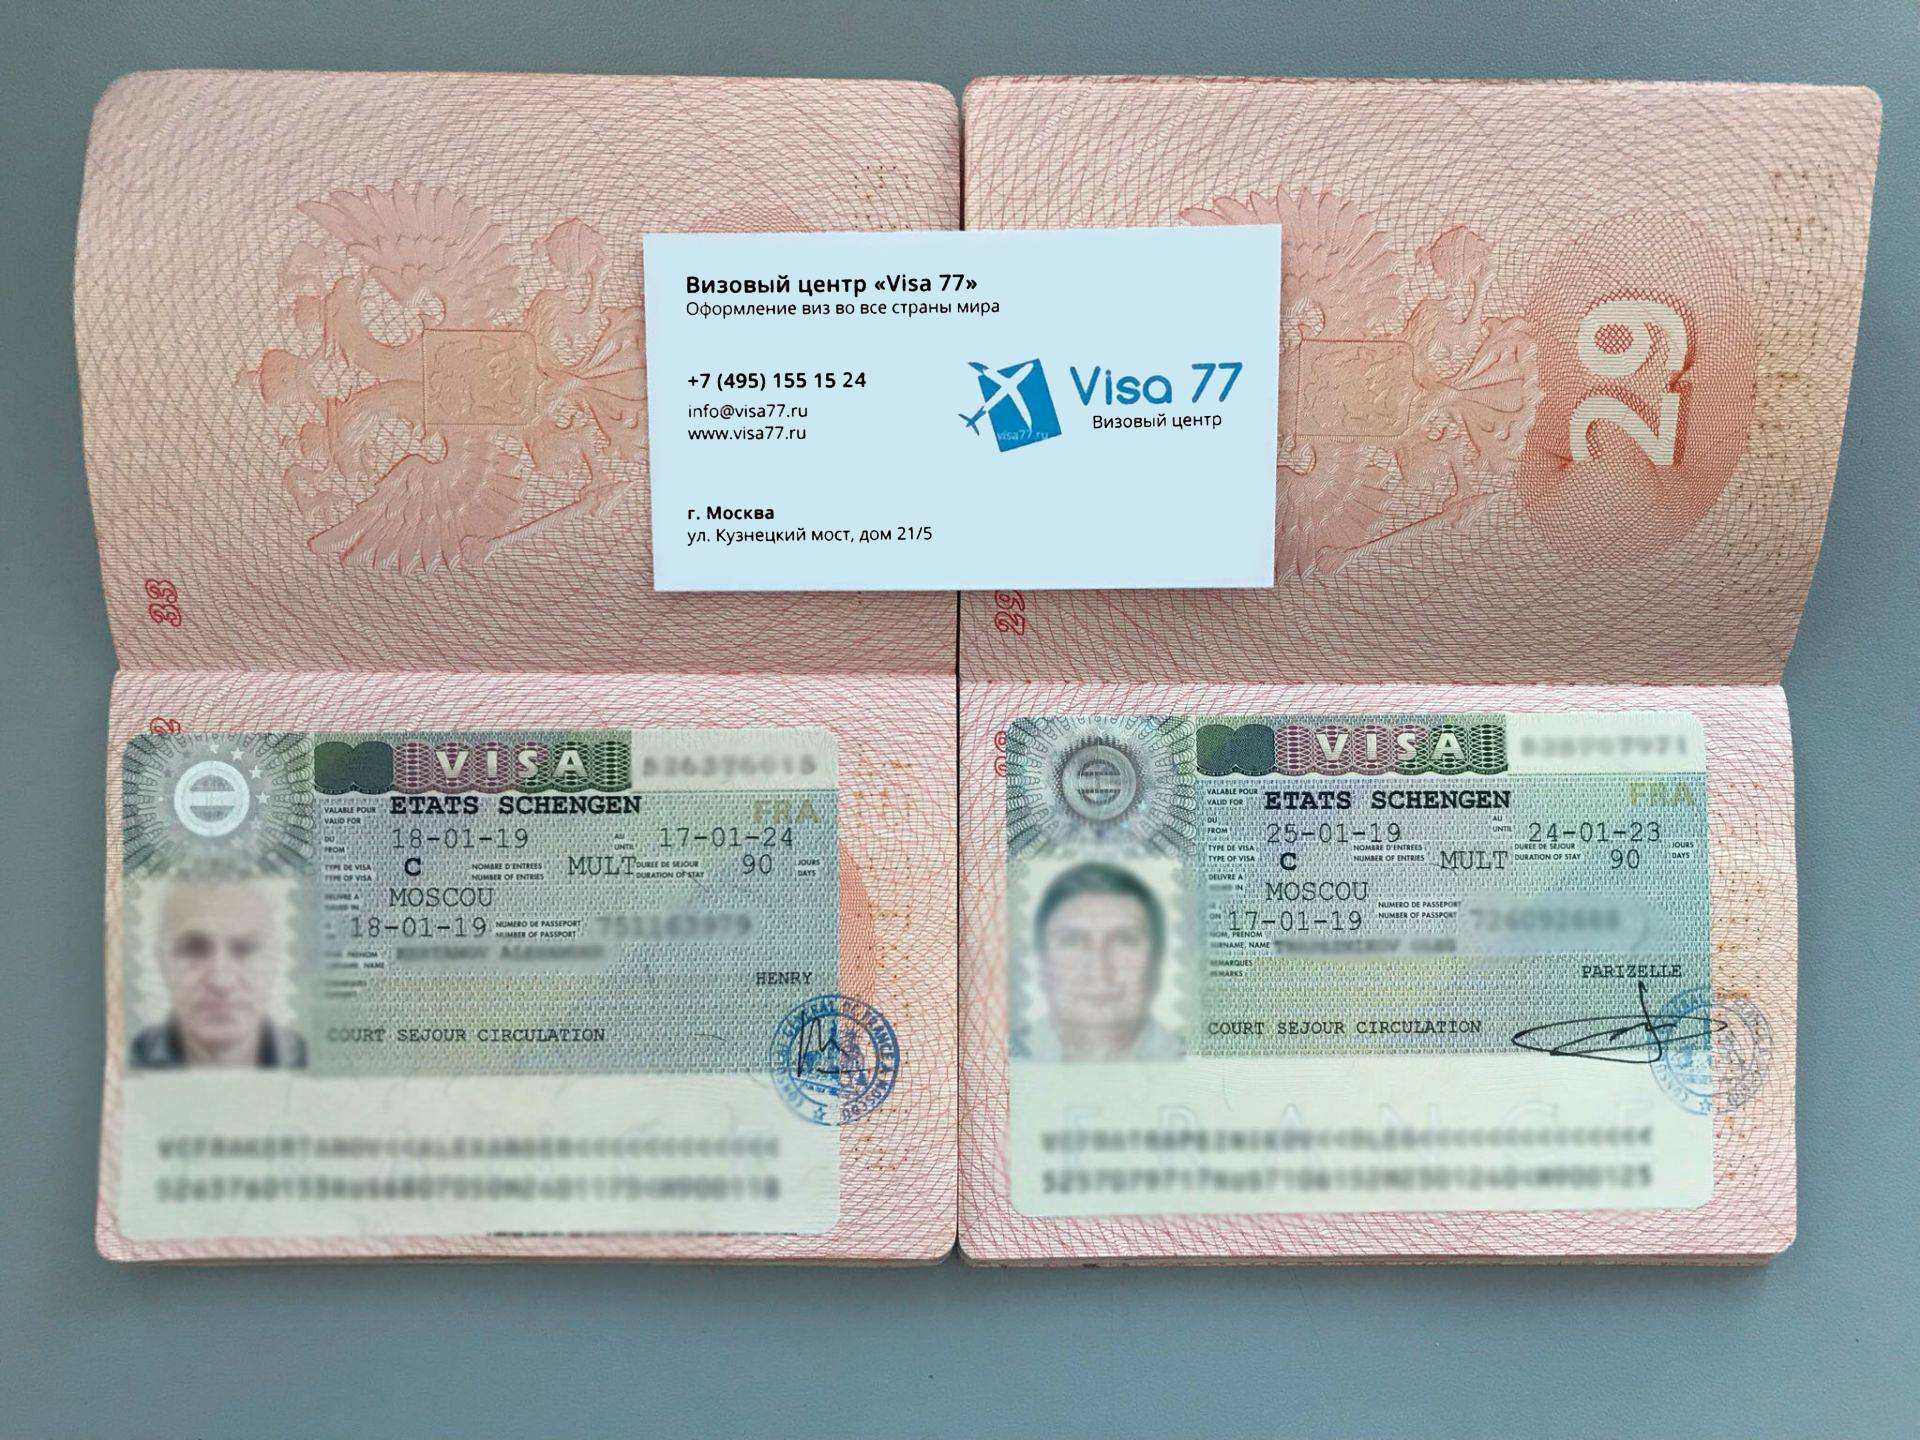 Шенген для безработных: как получить визу в 2022 году
шенген для безработных: как получить визу в 2022 году